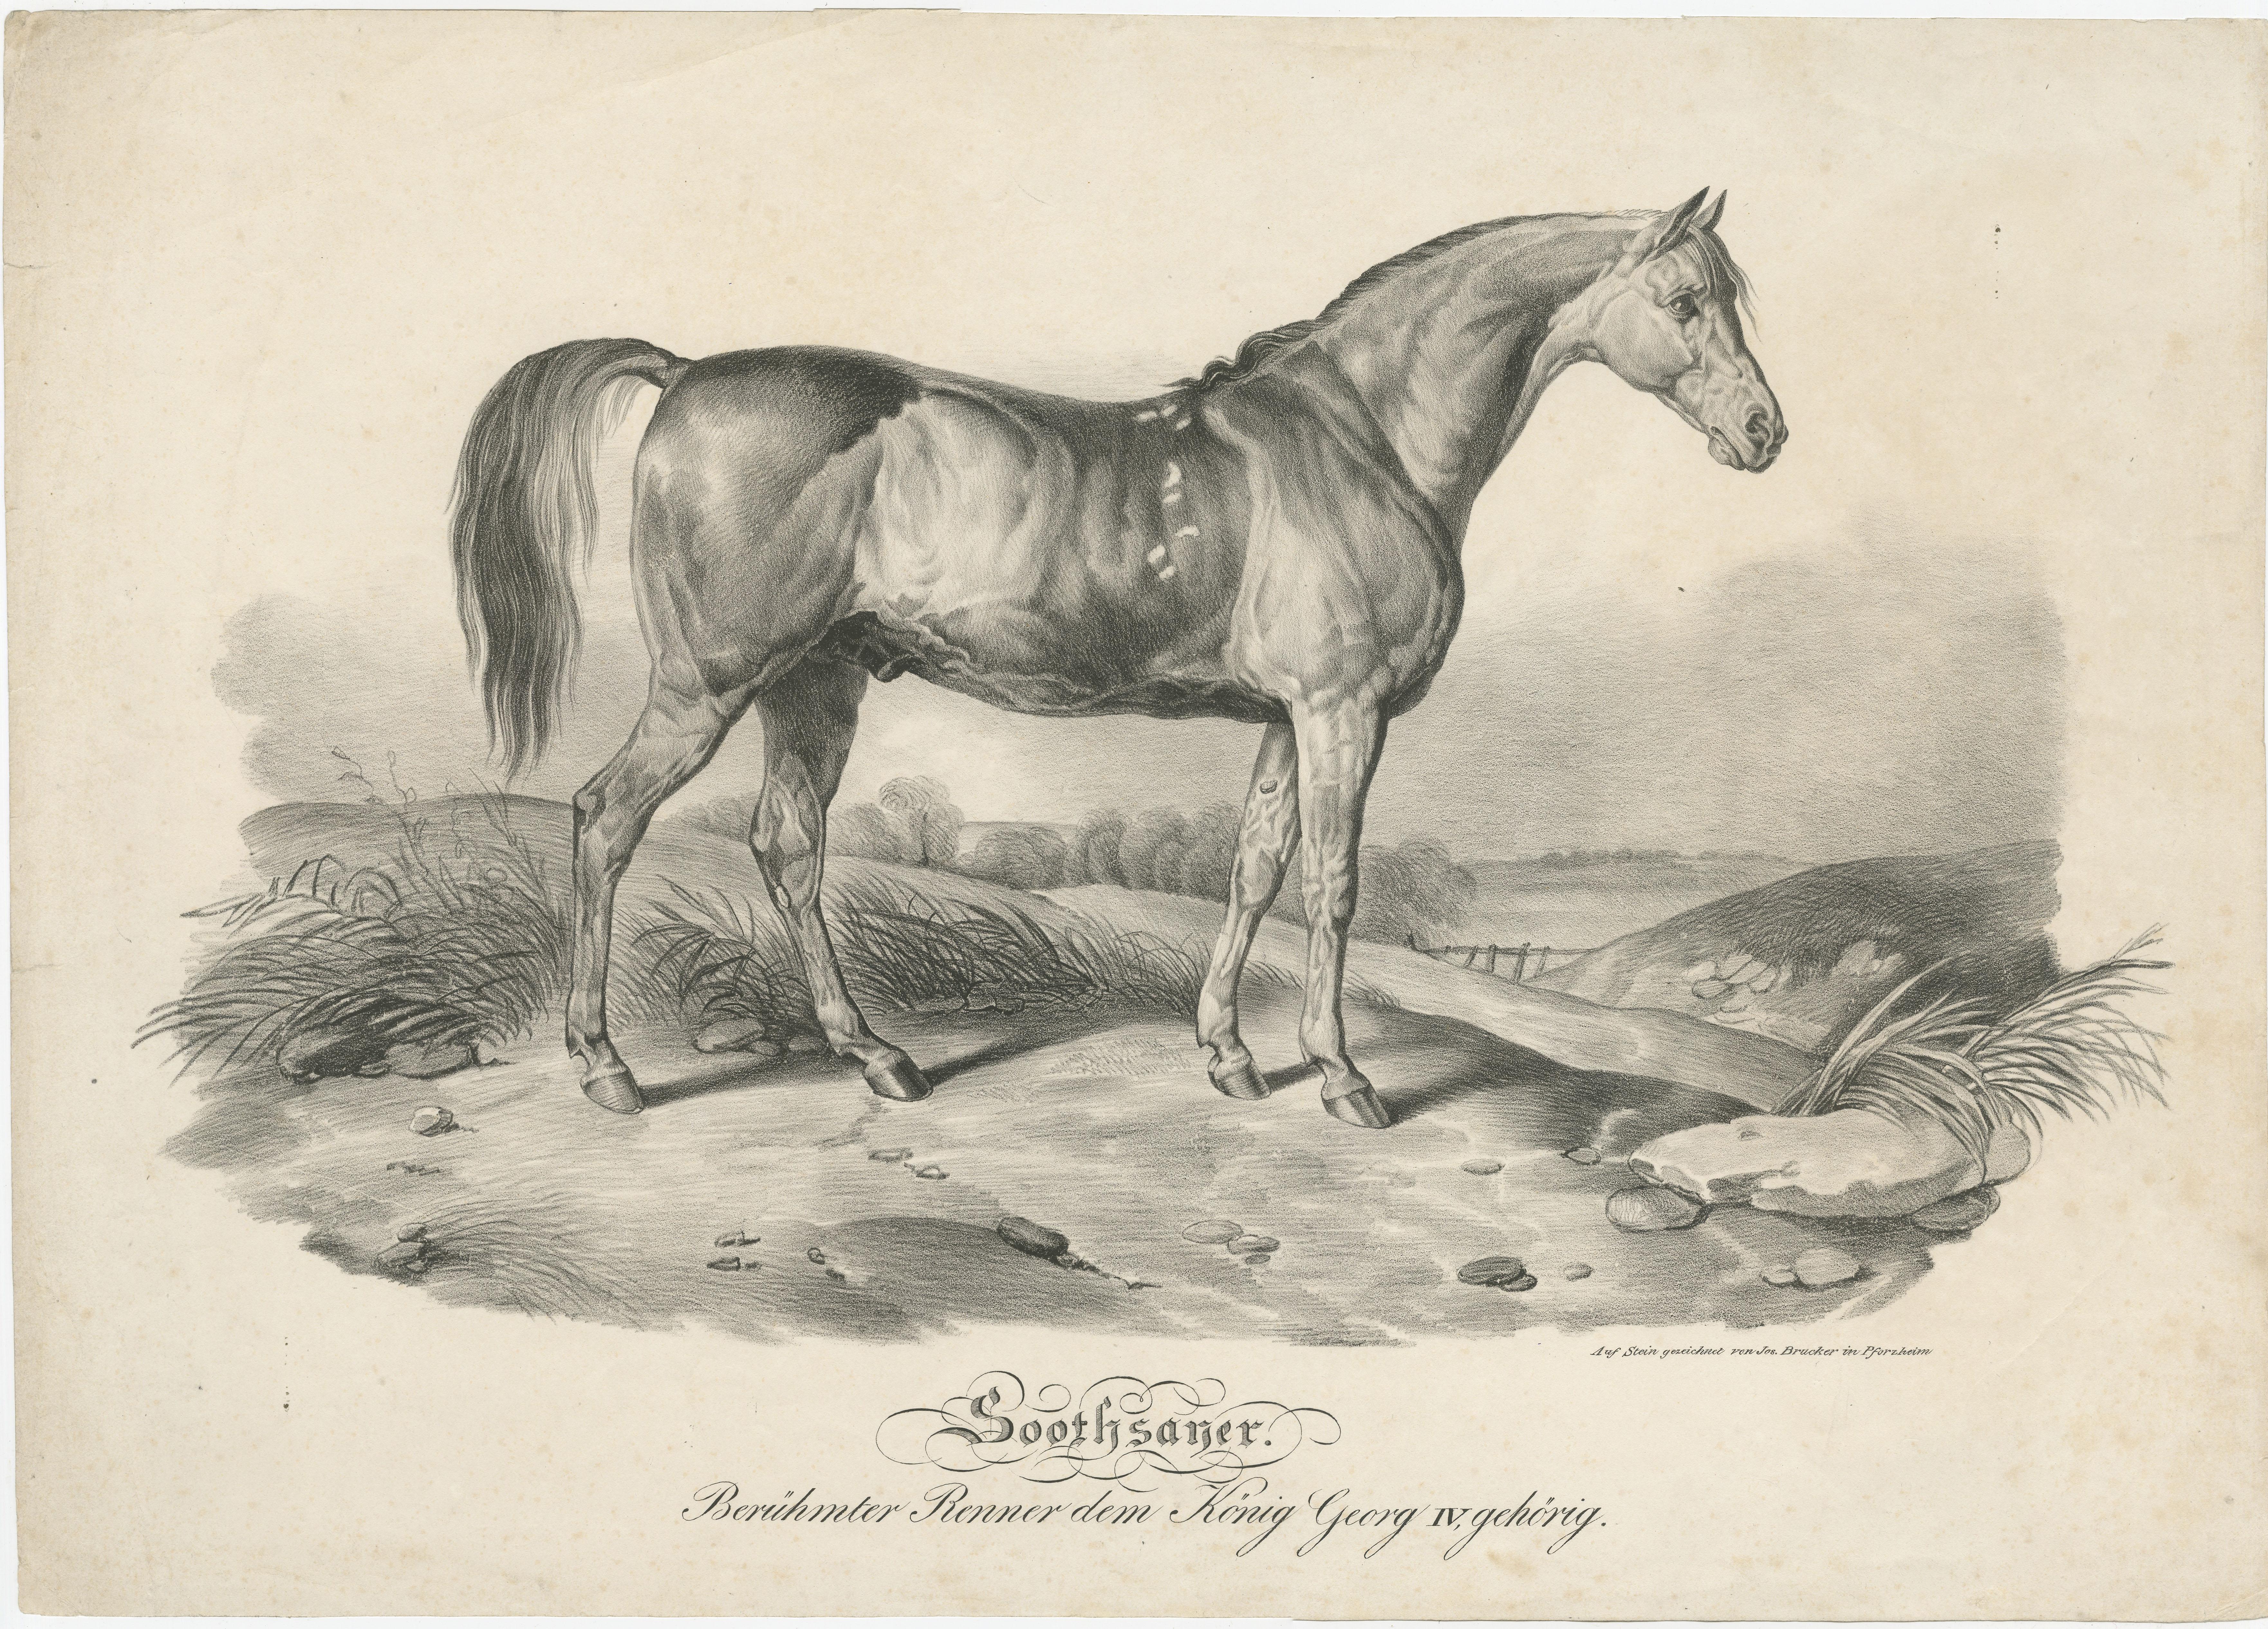 Antique print titled 'Soothsayer. Berühmter Renner dem König Georg IV, gehörig'. Original lithograph of racehorse 'Soothsayer', belonging to King George IV. Published by Jos. Brucker, circa 1840.